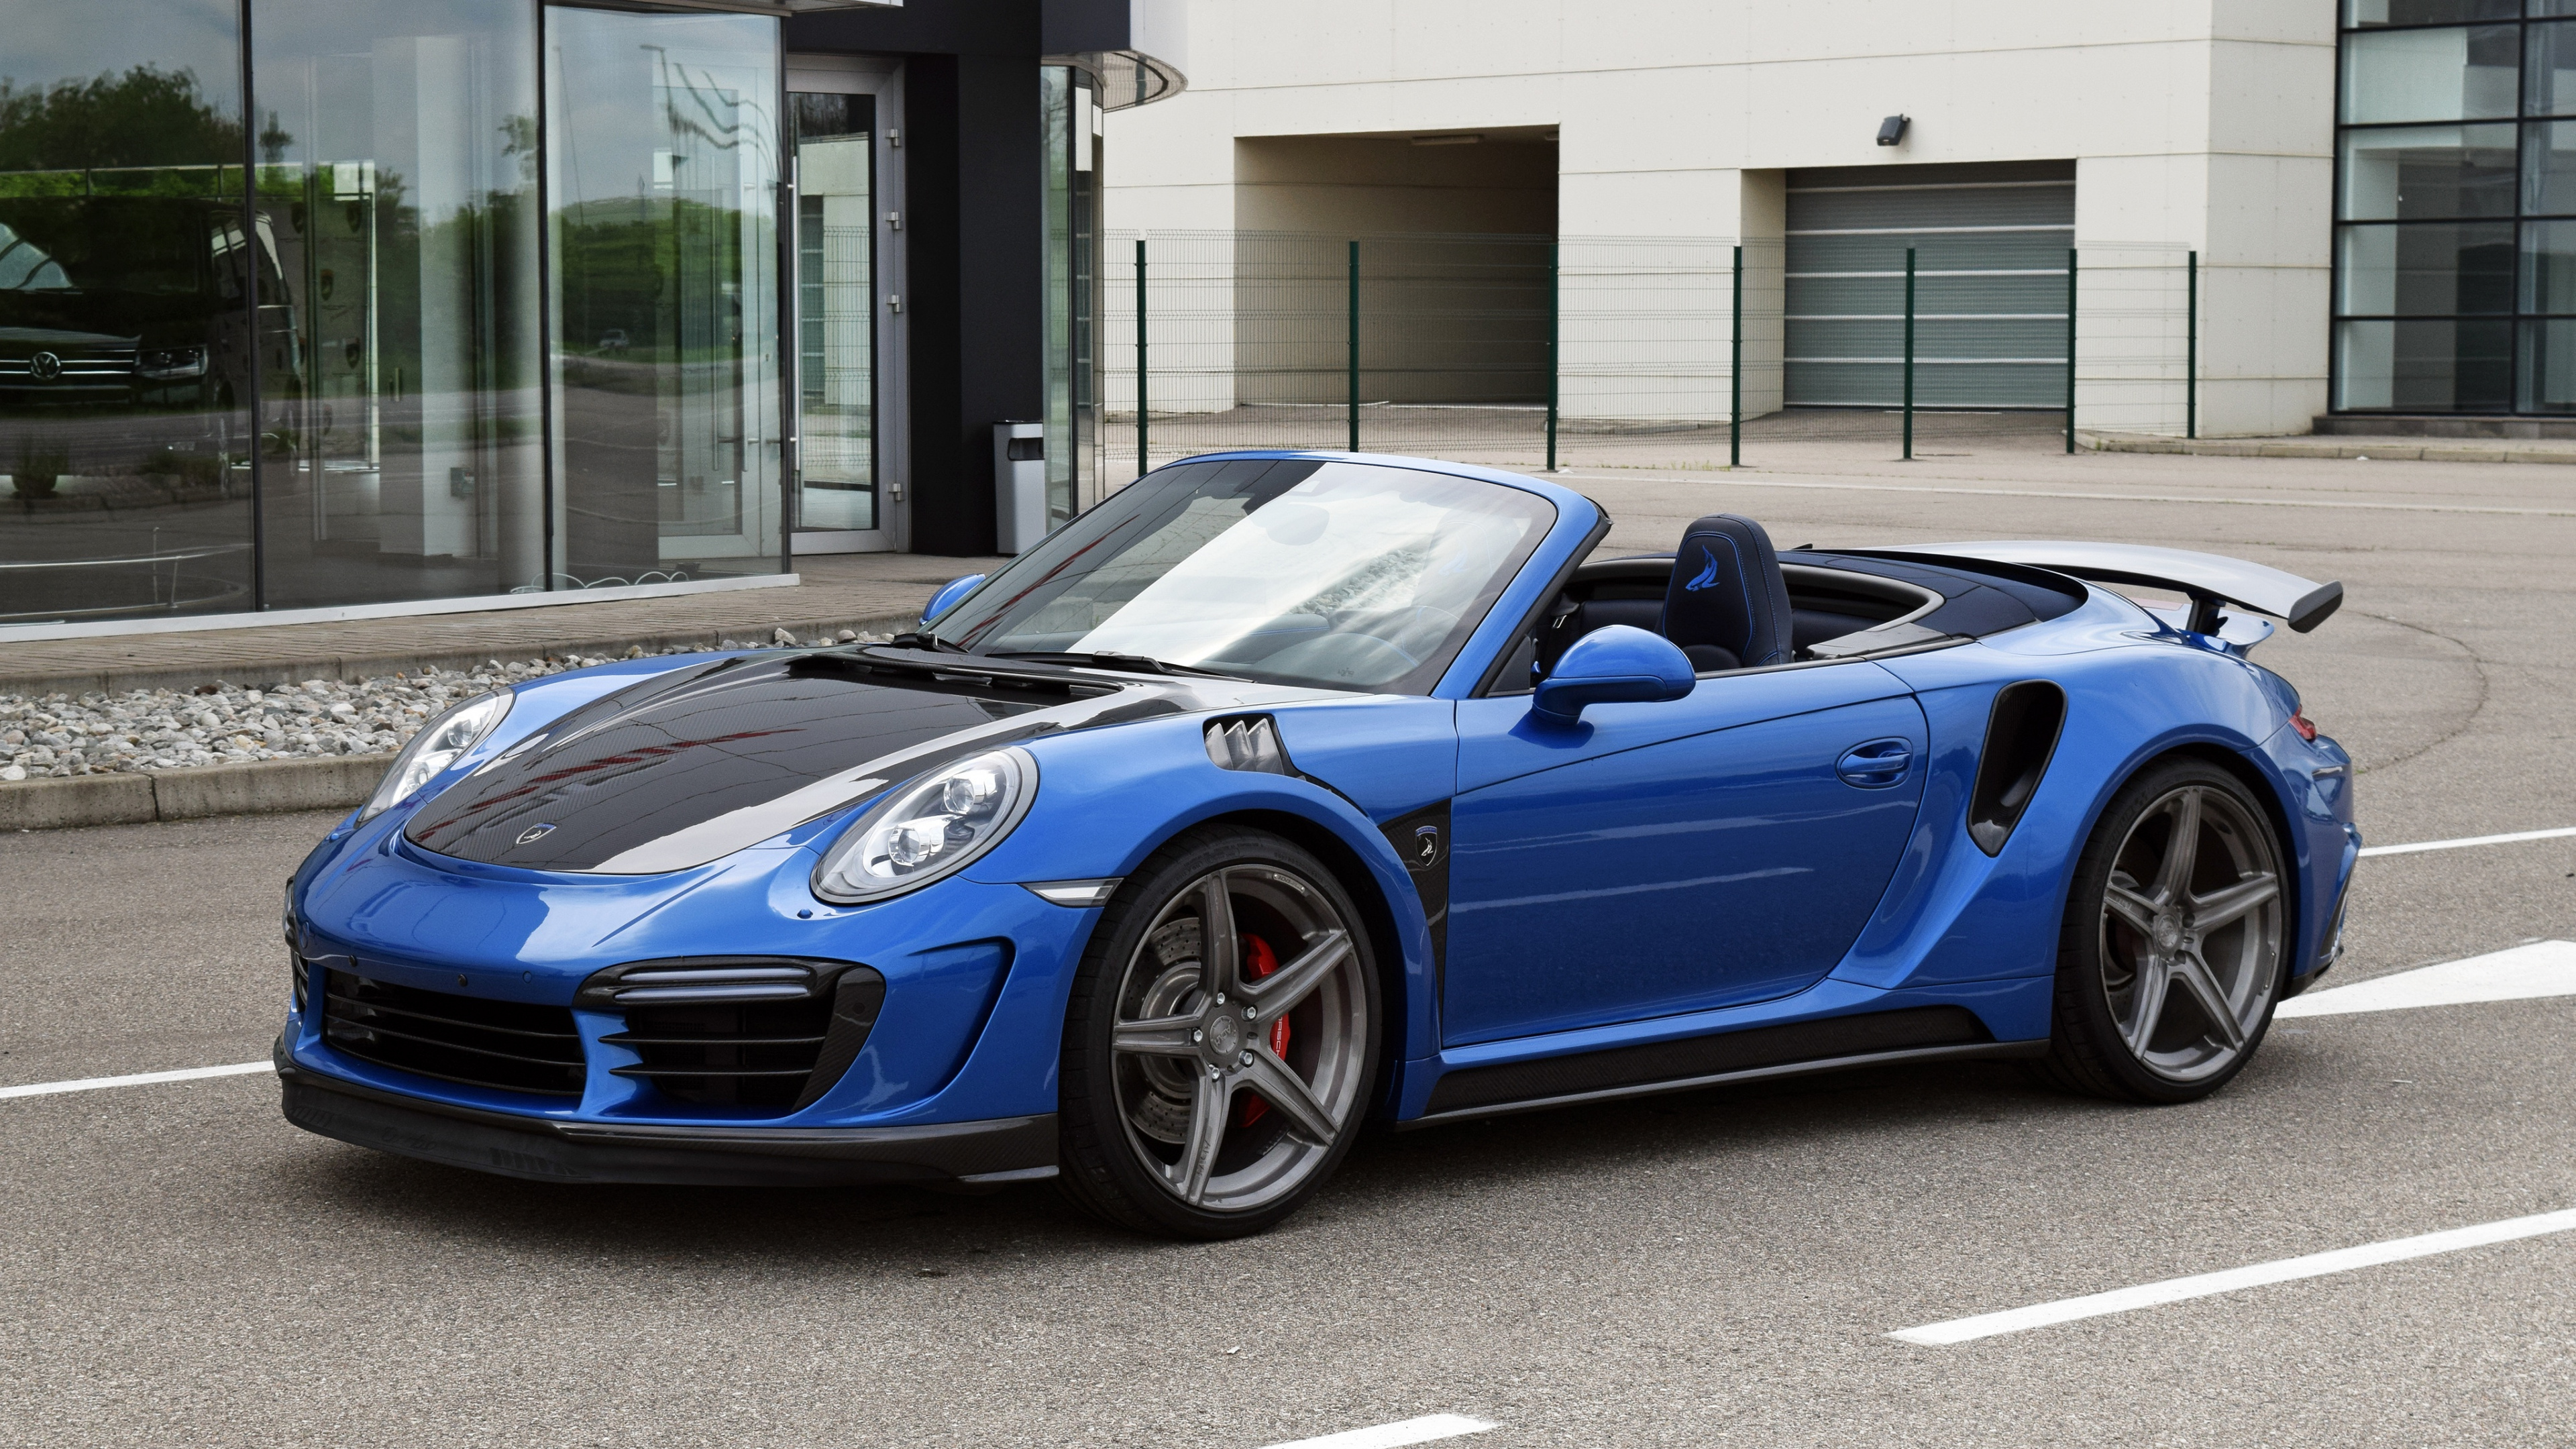 Blauer Porsche 911 Tagsüber in Der Nähe Des Gebäudes Geparkt. Wallpaper in 3840x2160 Resolution